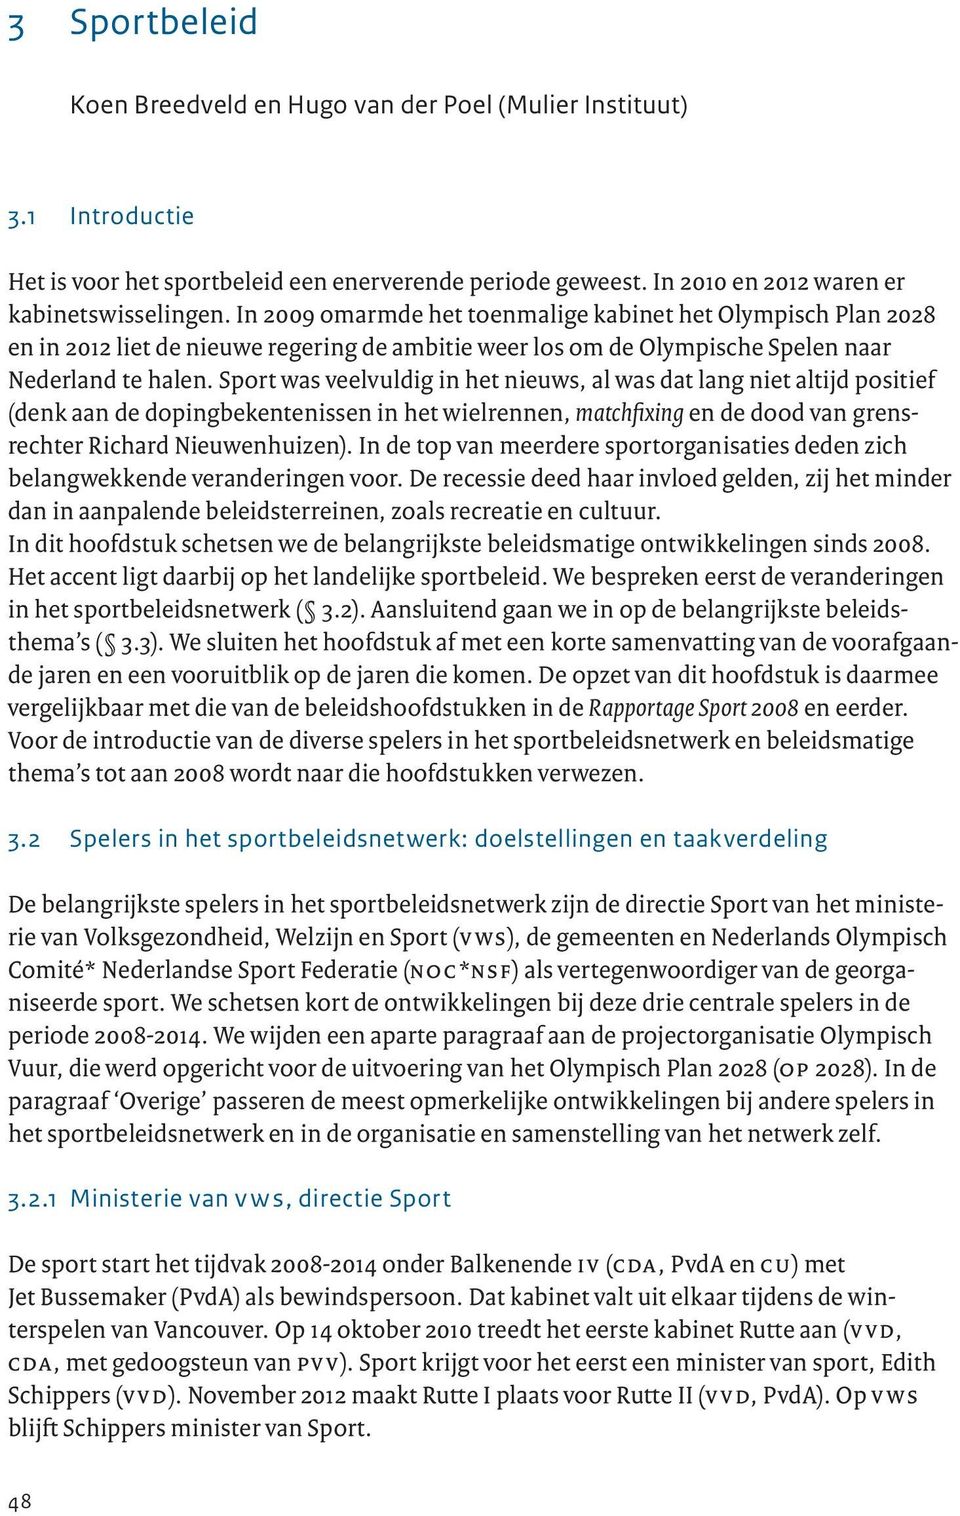 Sport was veelvuldig in het nieuws, al was dat lang niet altijd positief (denk aan de dopingbekentenissen in het wielrennen, matchfixing en de dood van grensrechter Richard Nieuwenhuizen).